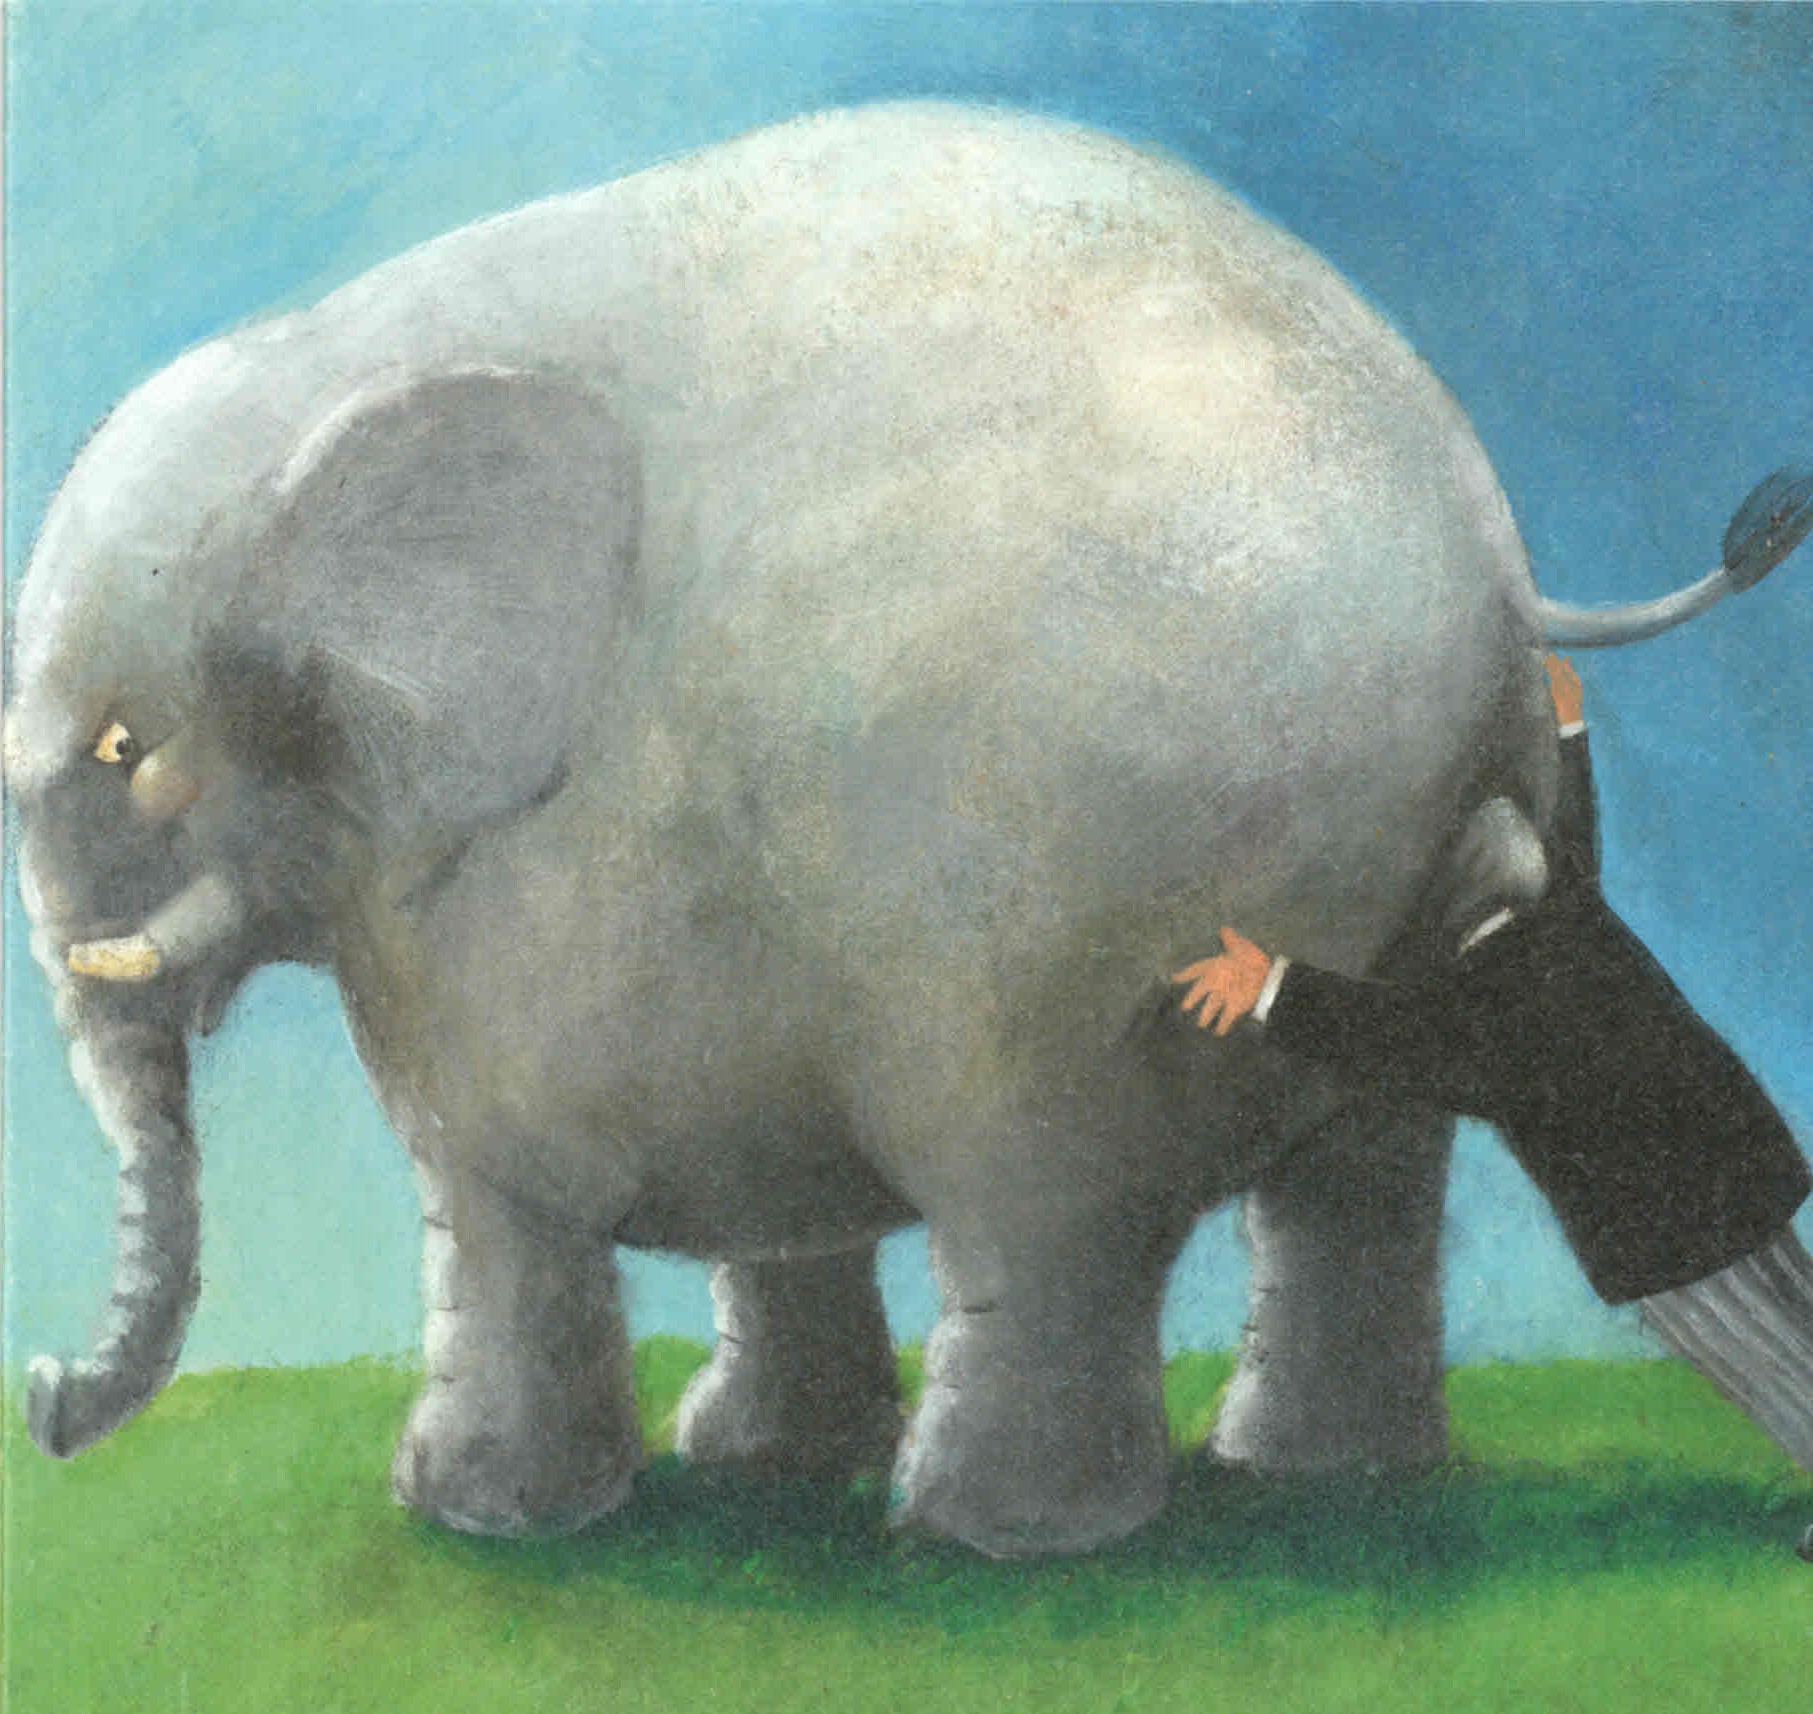 pushing the elephant